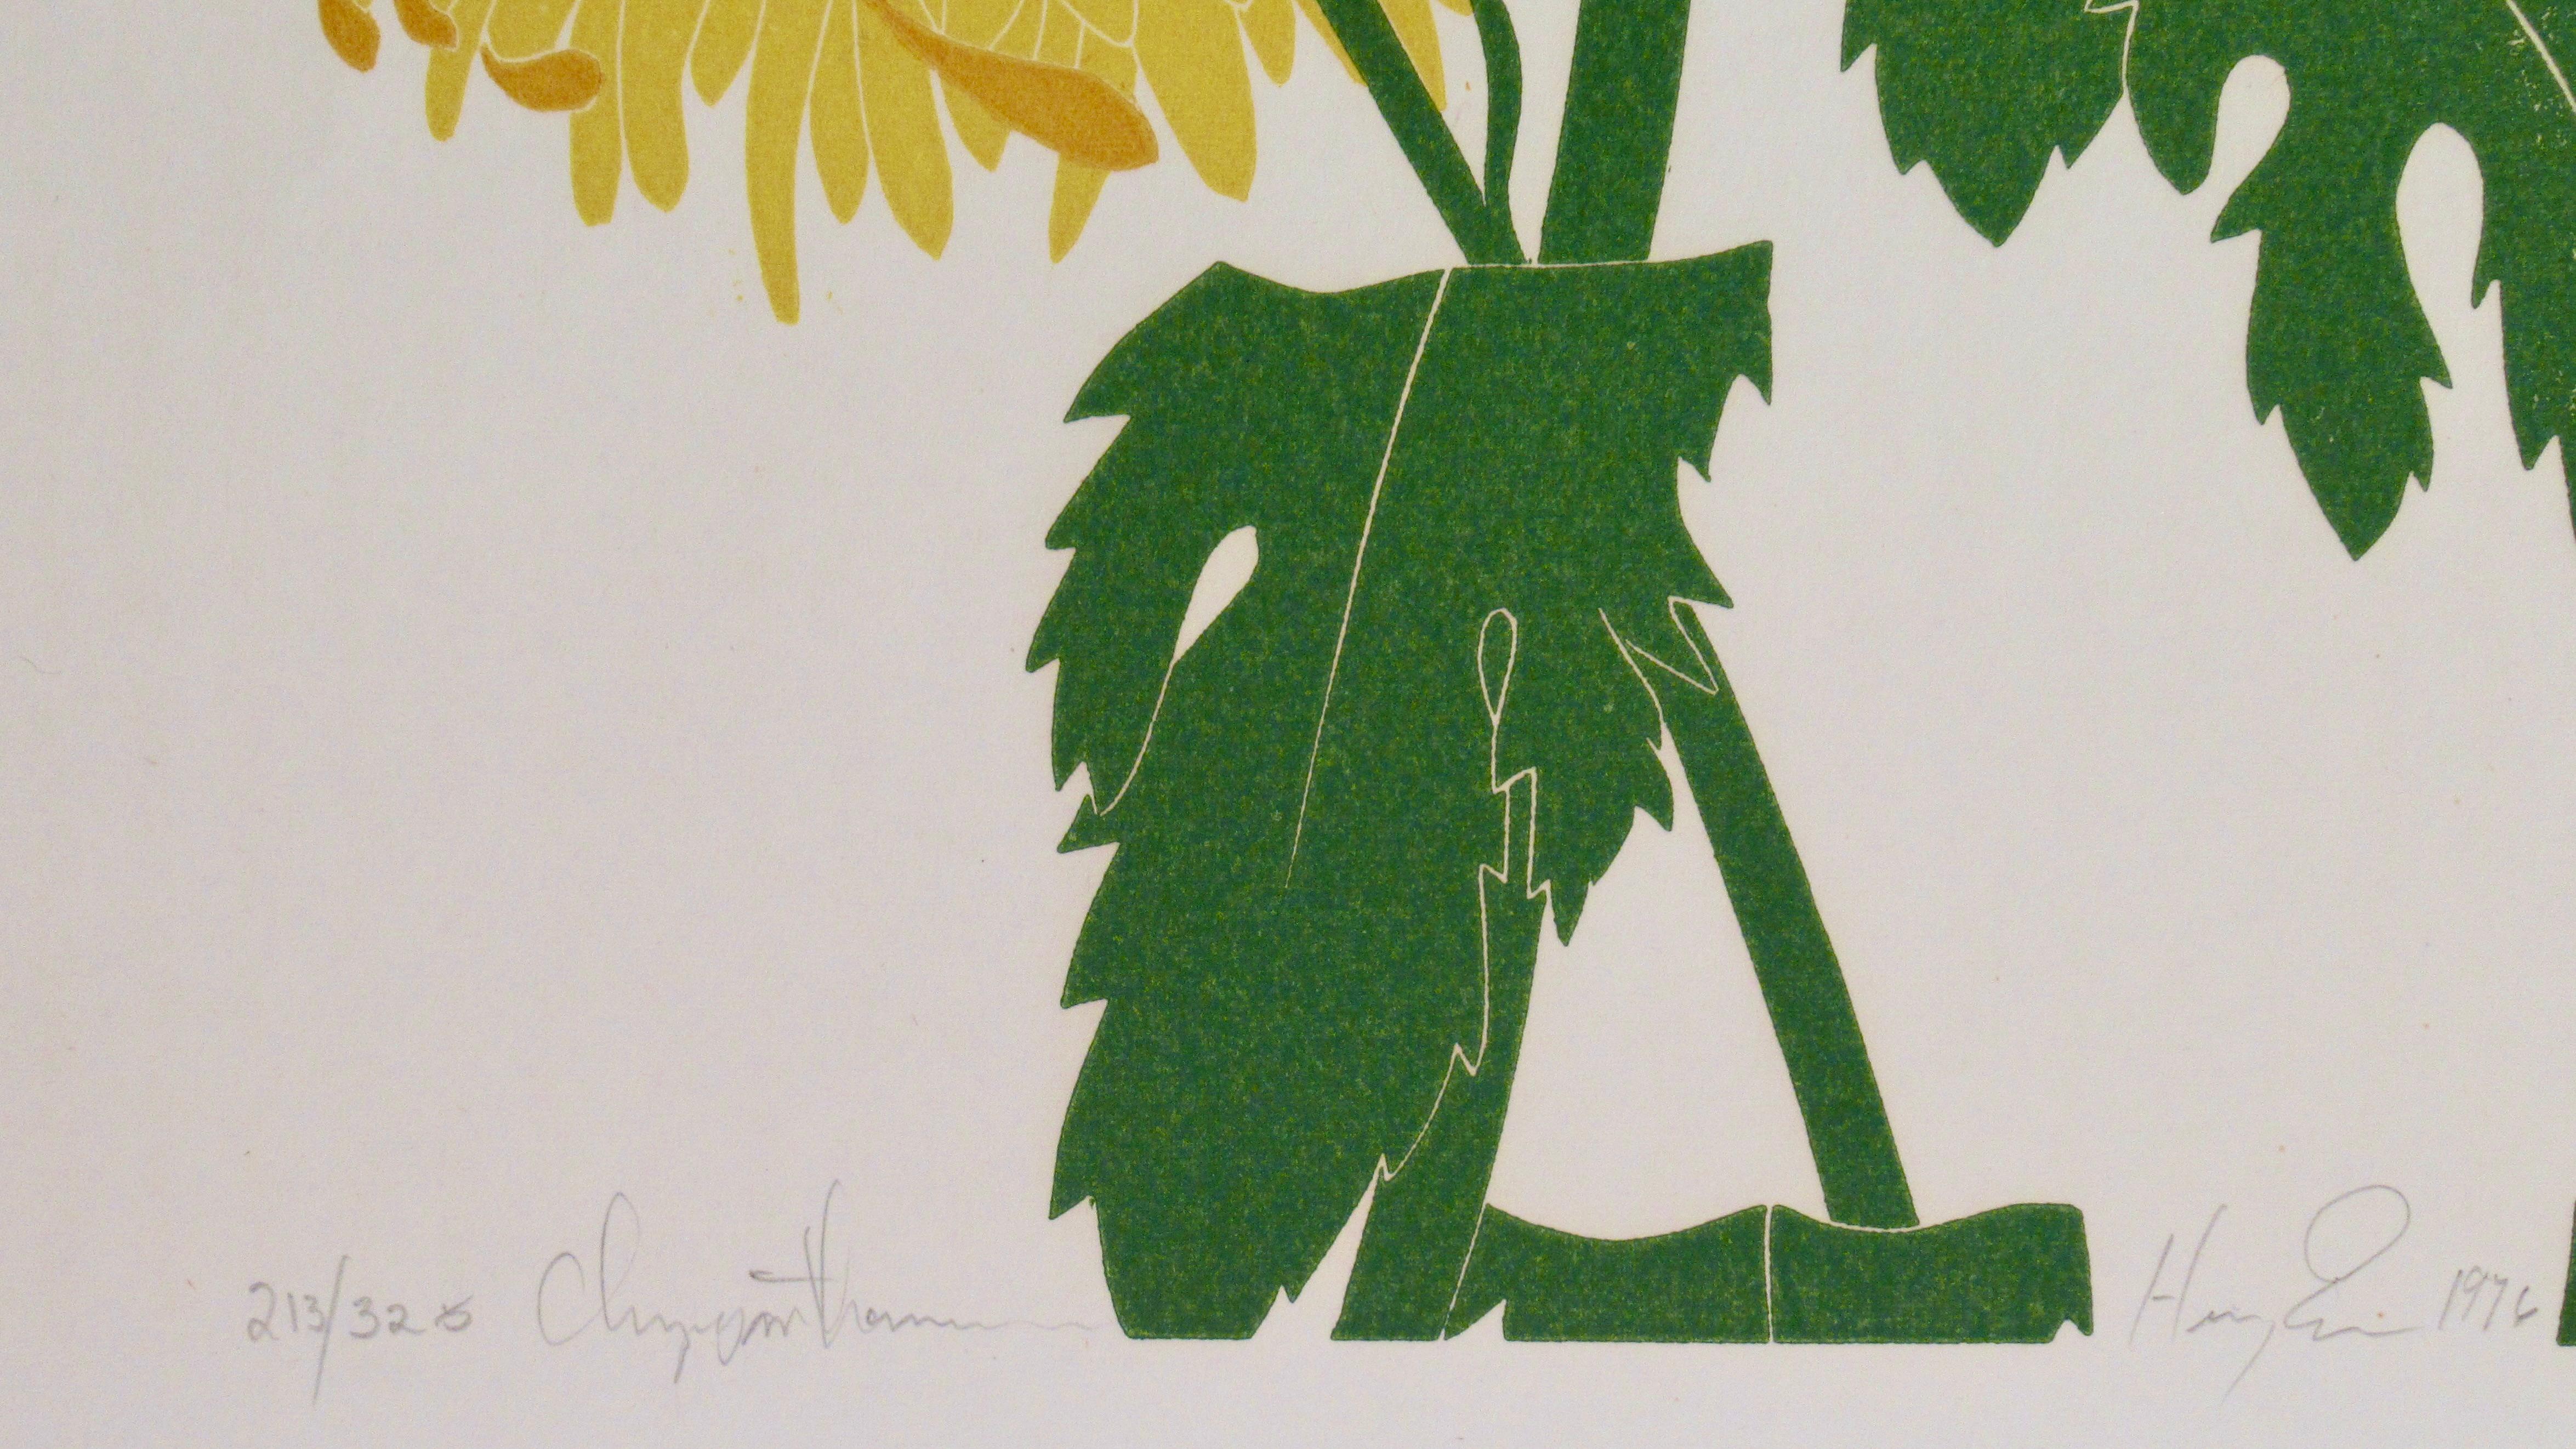 chrysanthemum - American Realist Print by Henry Evans